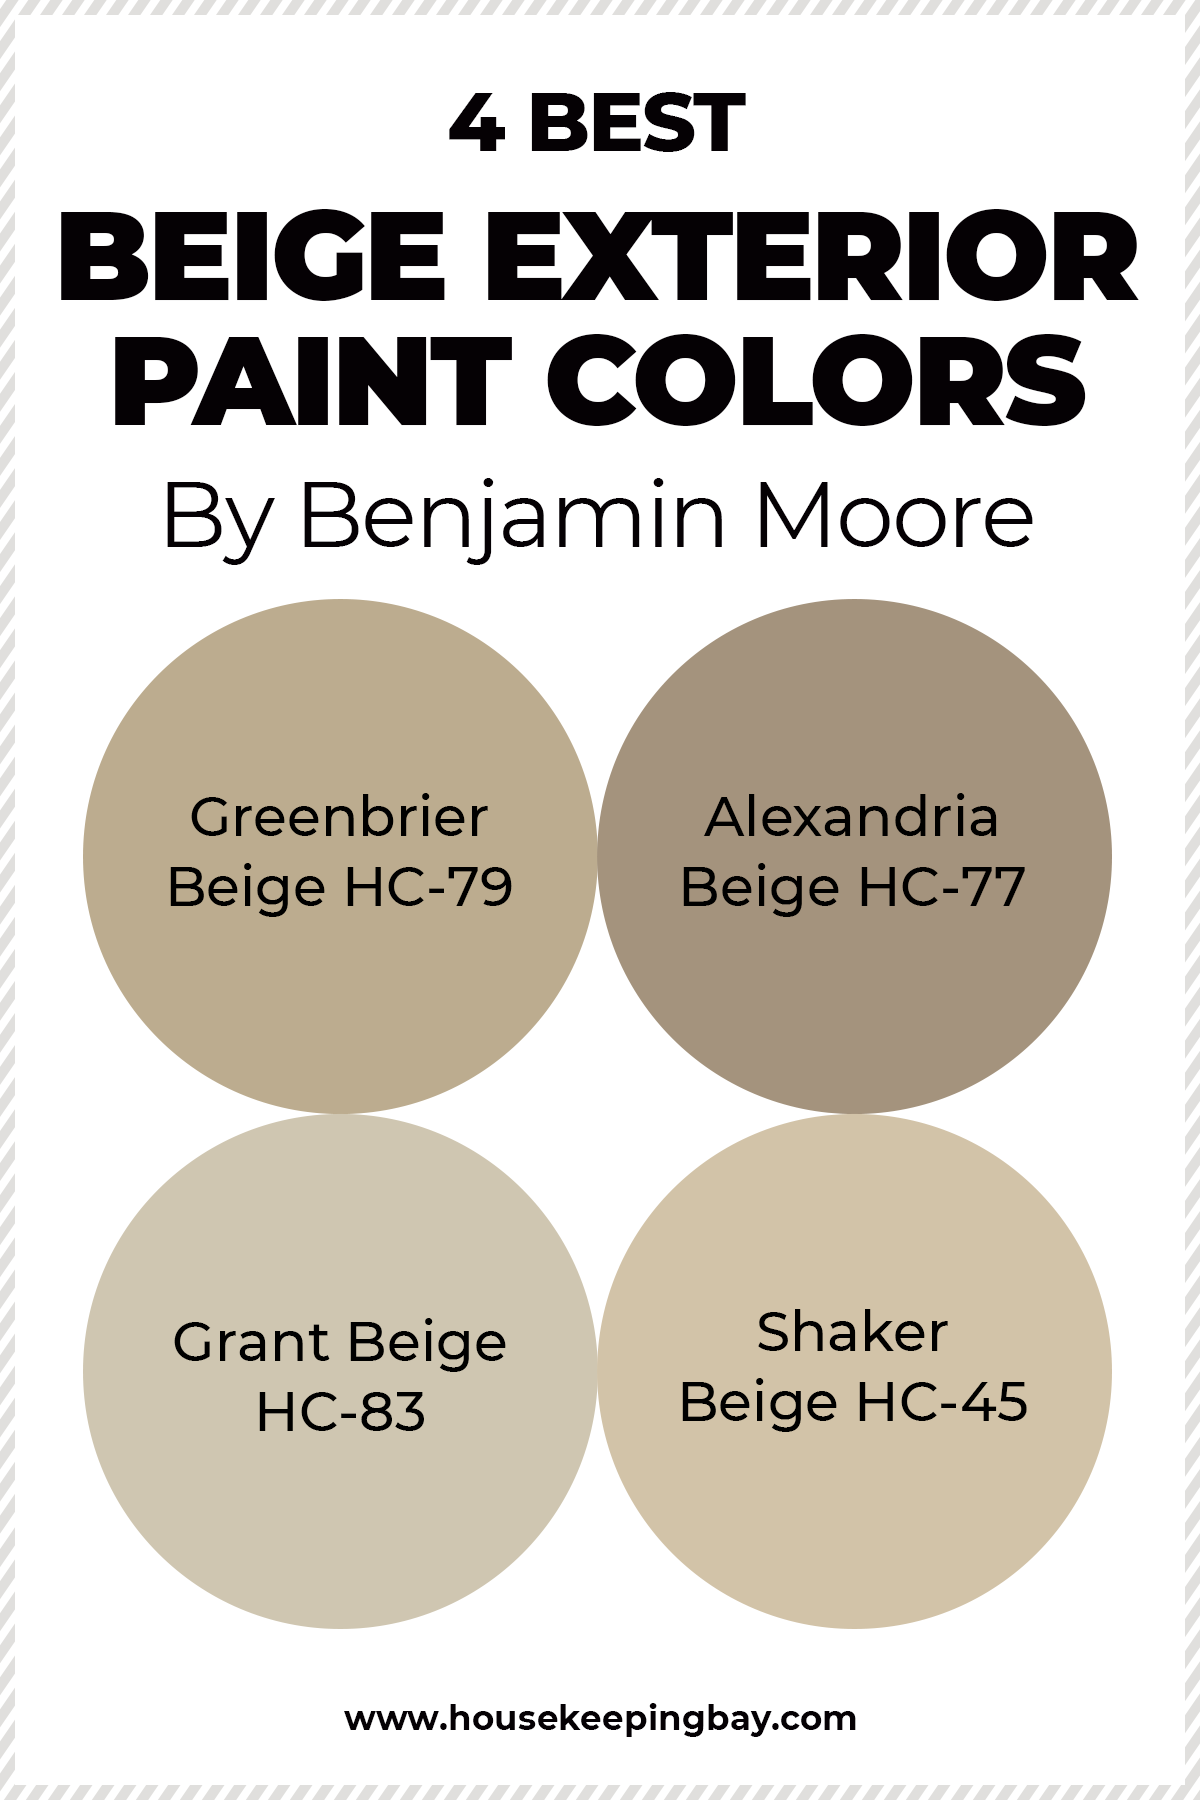 4 BEST Beige Exterior paint colors by Benjamin Moore